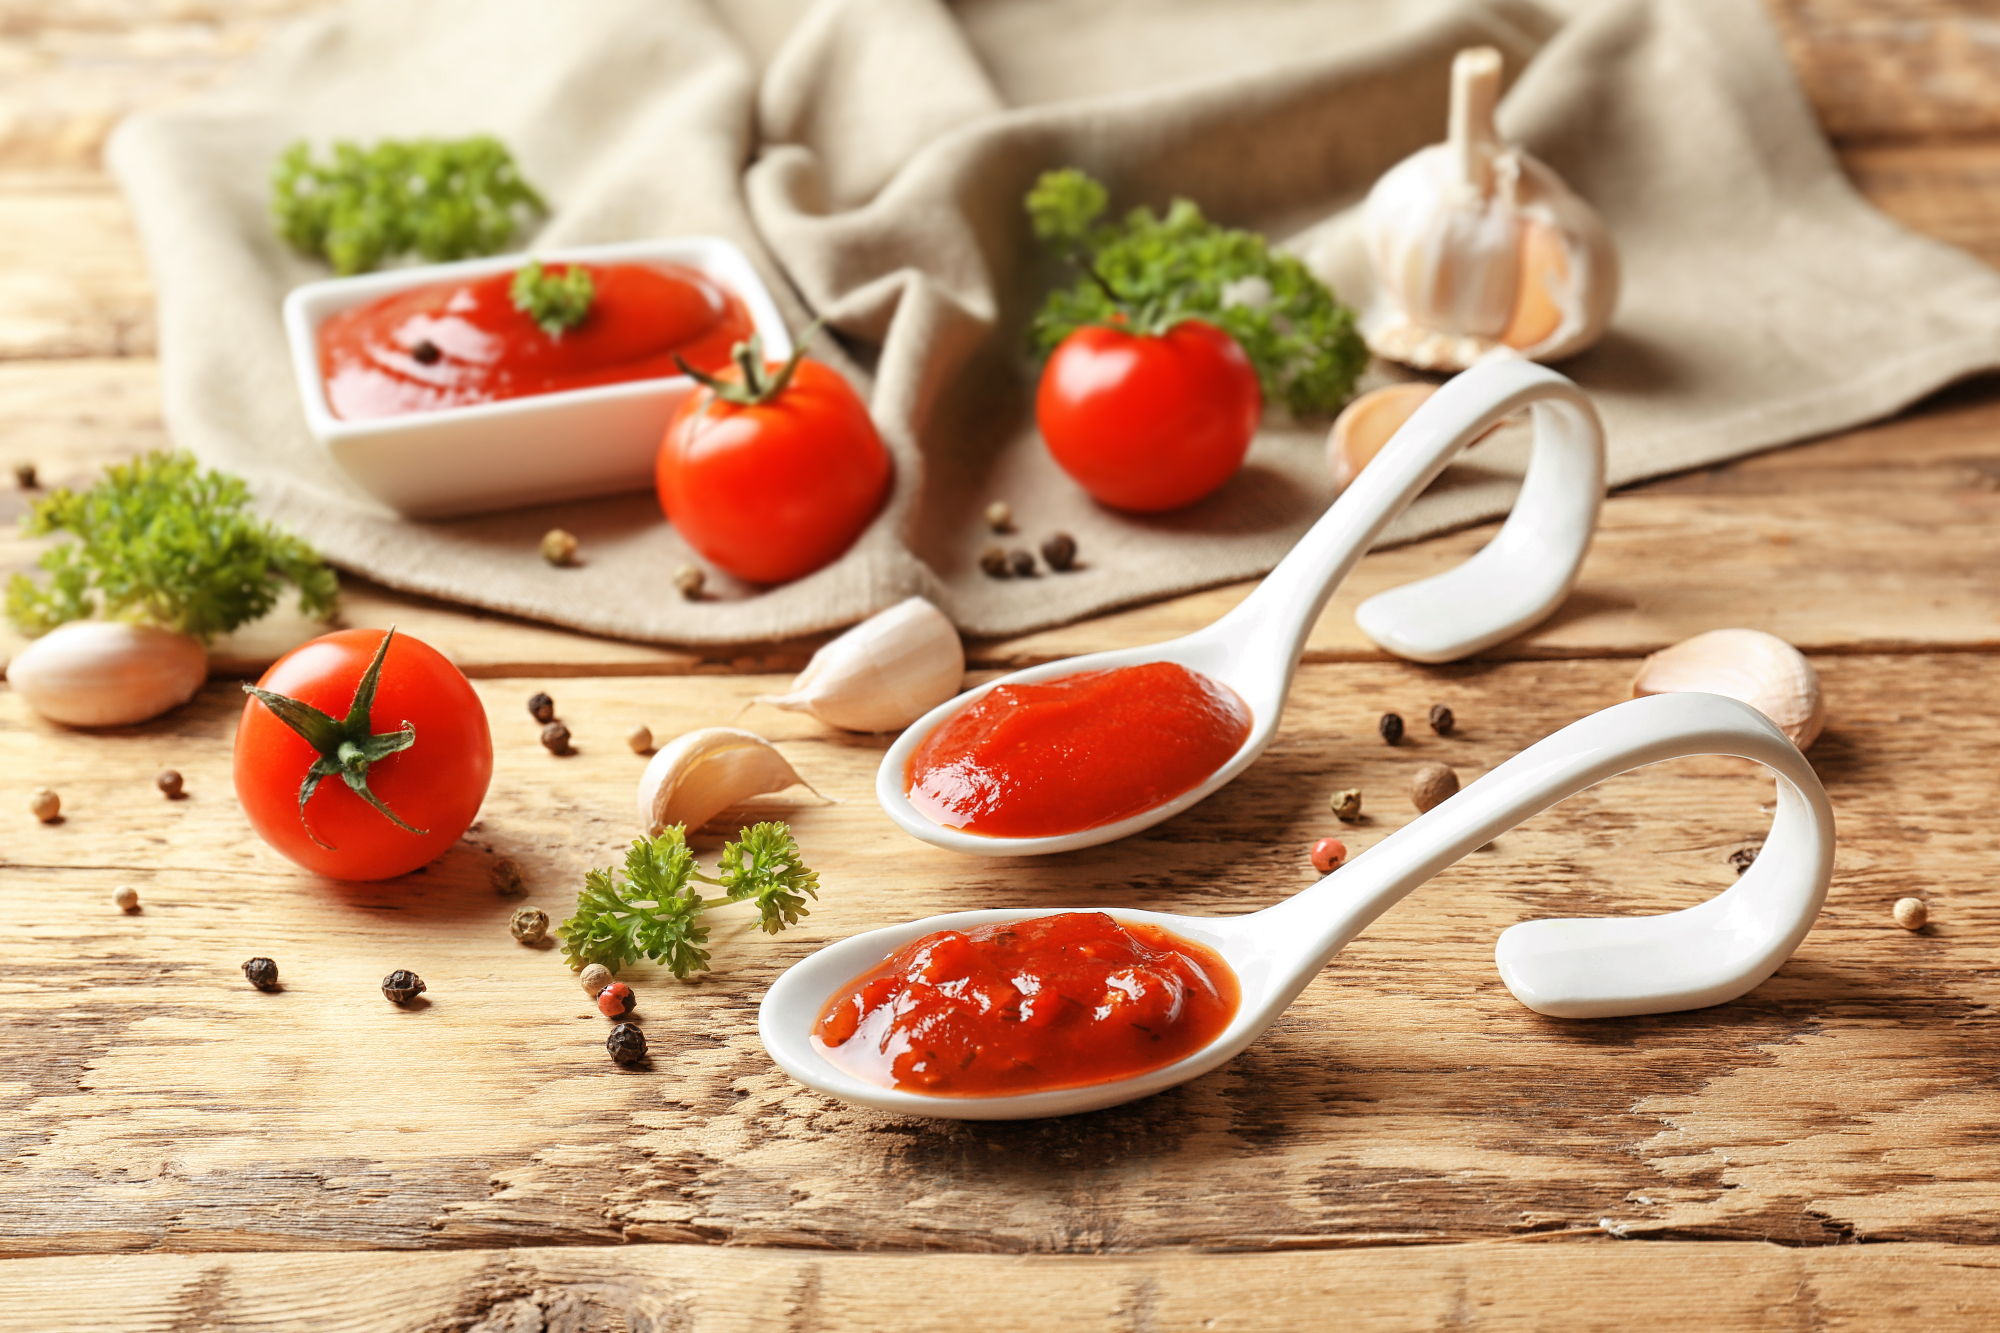 Paradižnikova omaka paše k marsičemu in hkrati je zelo dobra